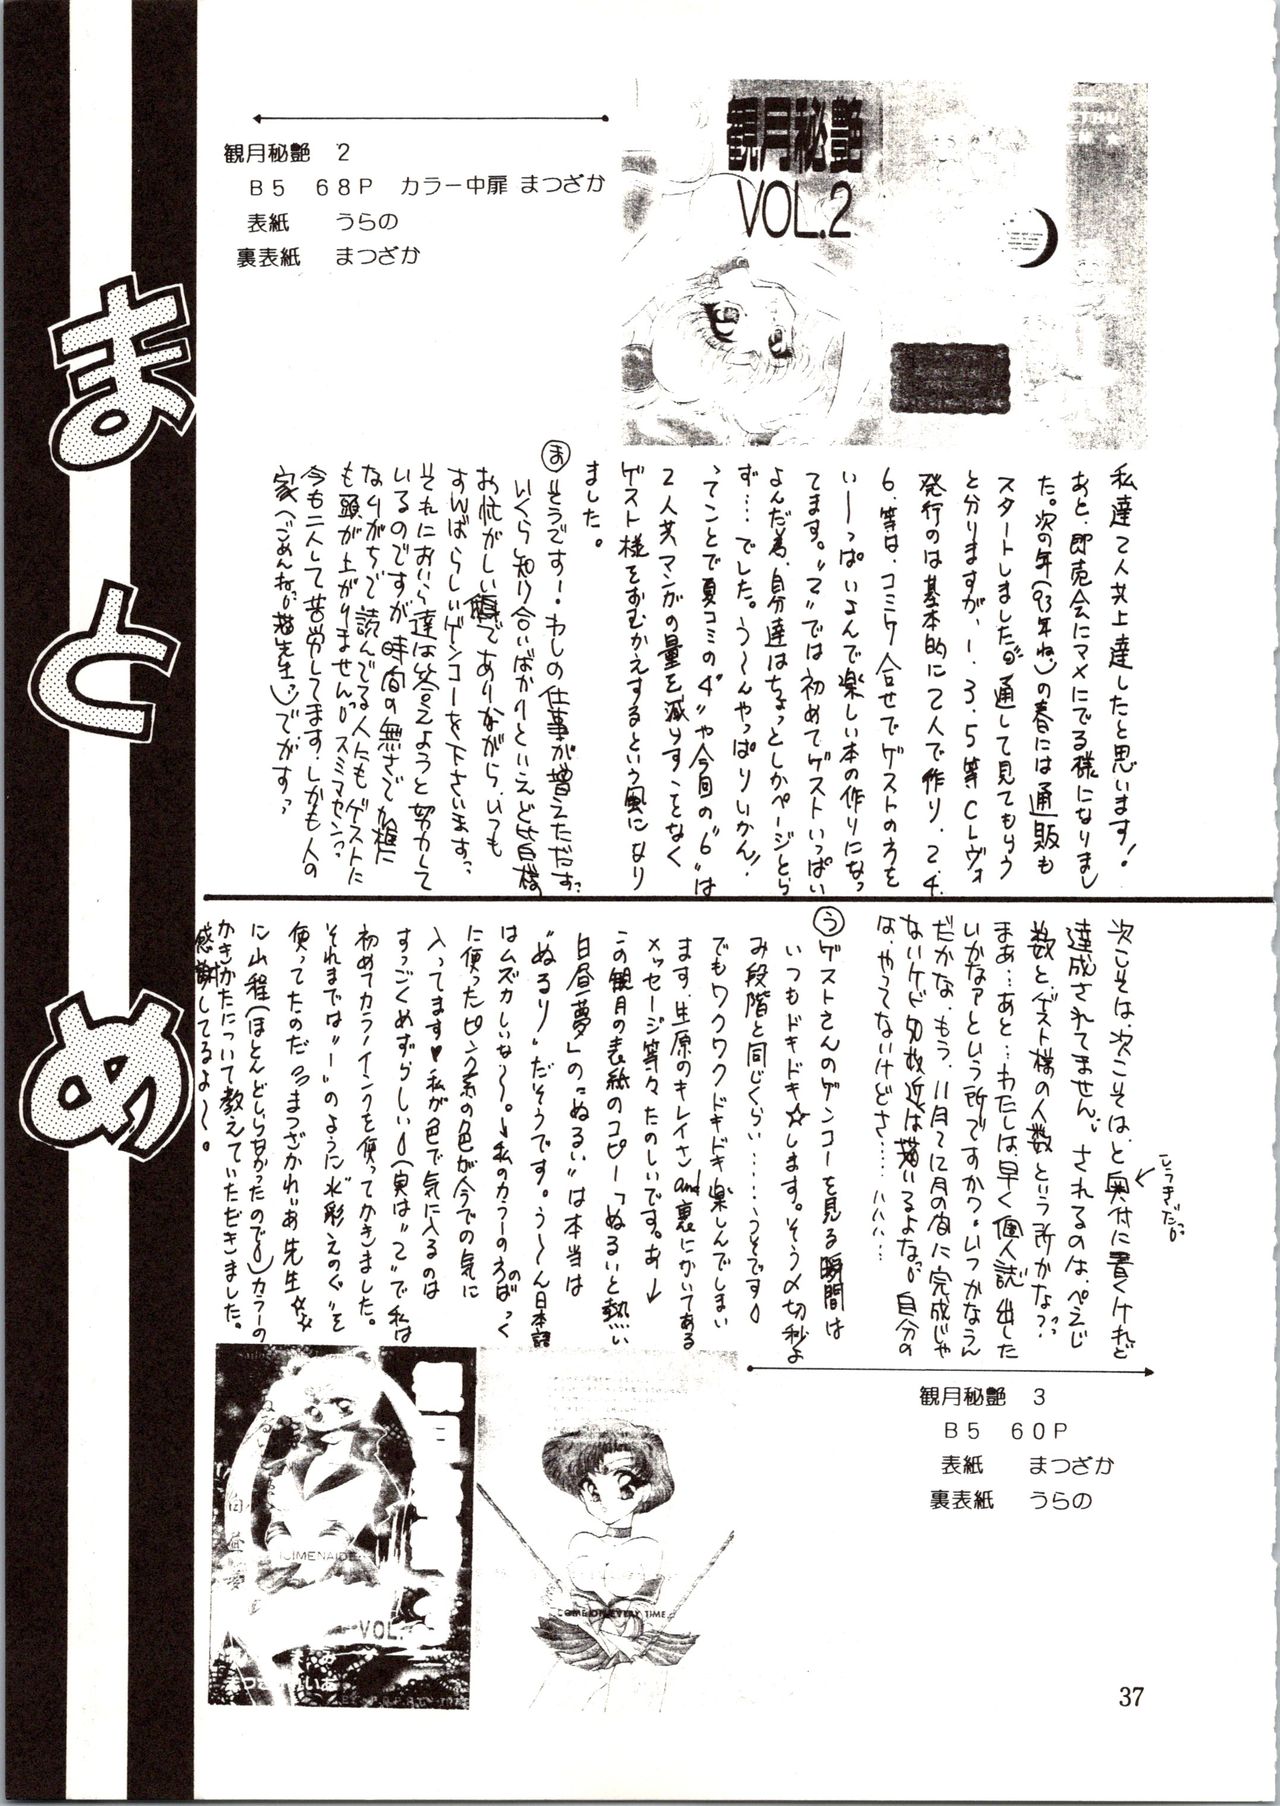 [P.P.P.P.C, TRAP (Matsuzaka Reia, Urano Mami)] Kangethu Hien Vol. 6 (Bishoujo Senshi Sailor Moon) page 37 full